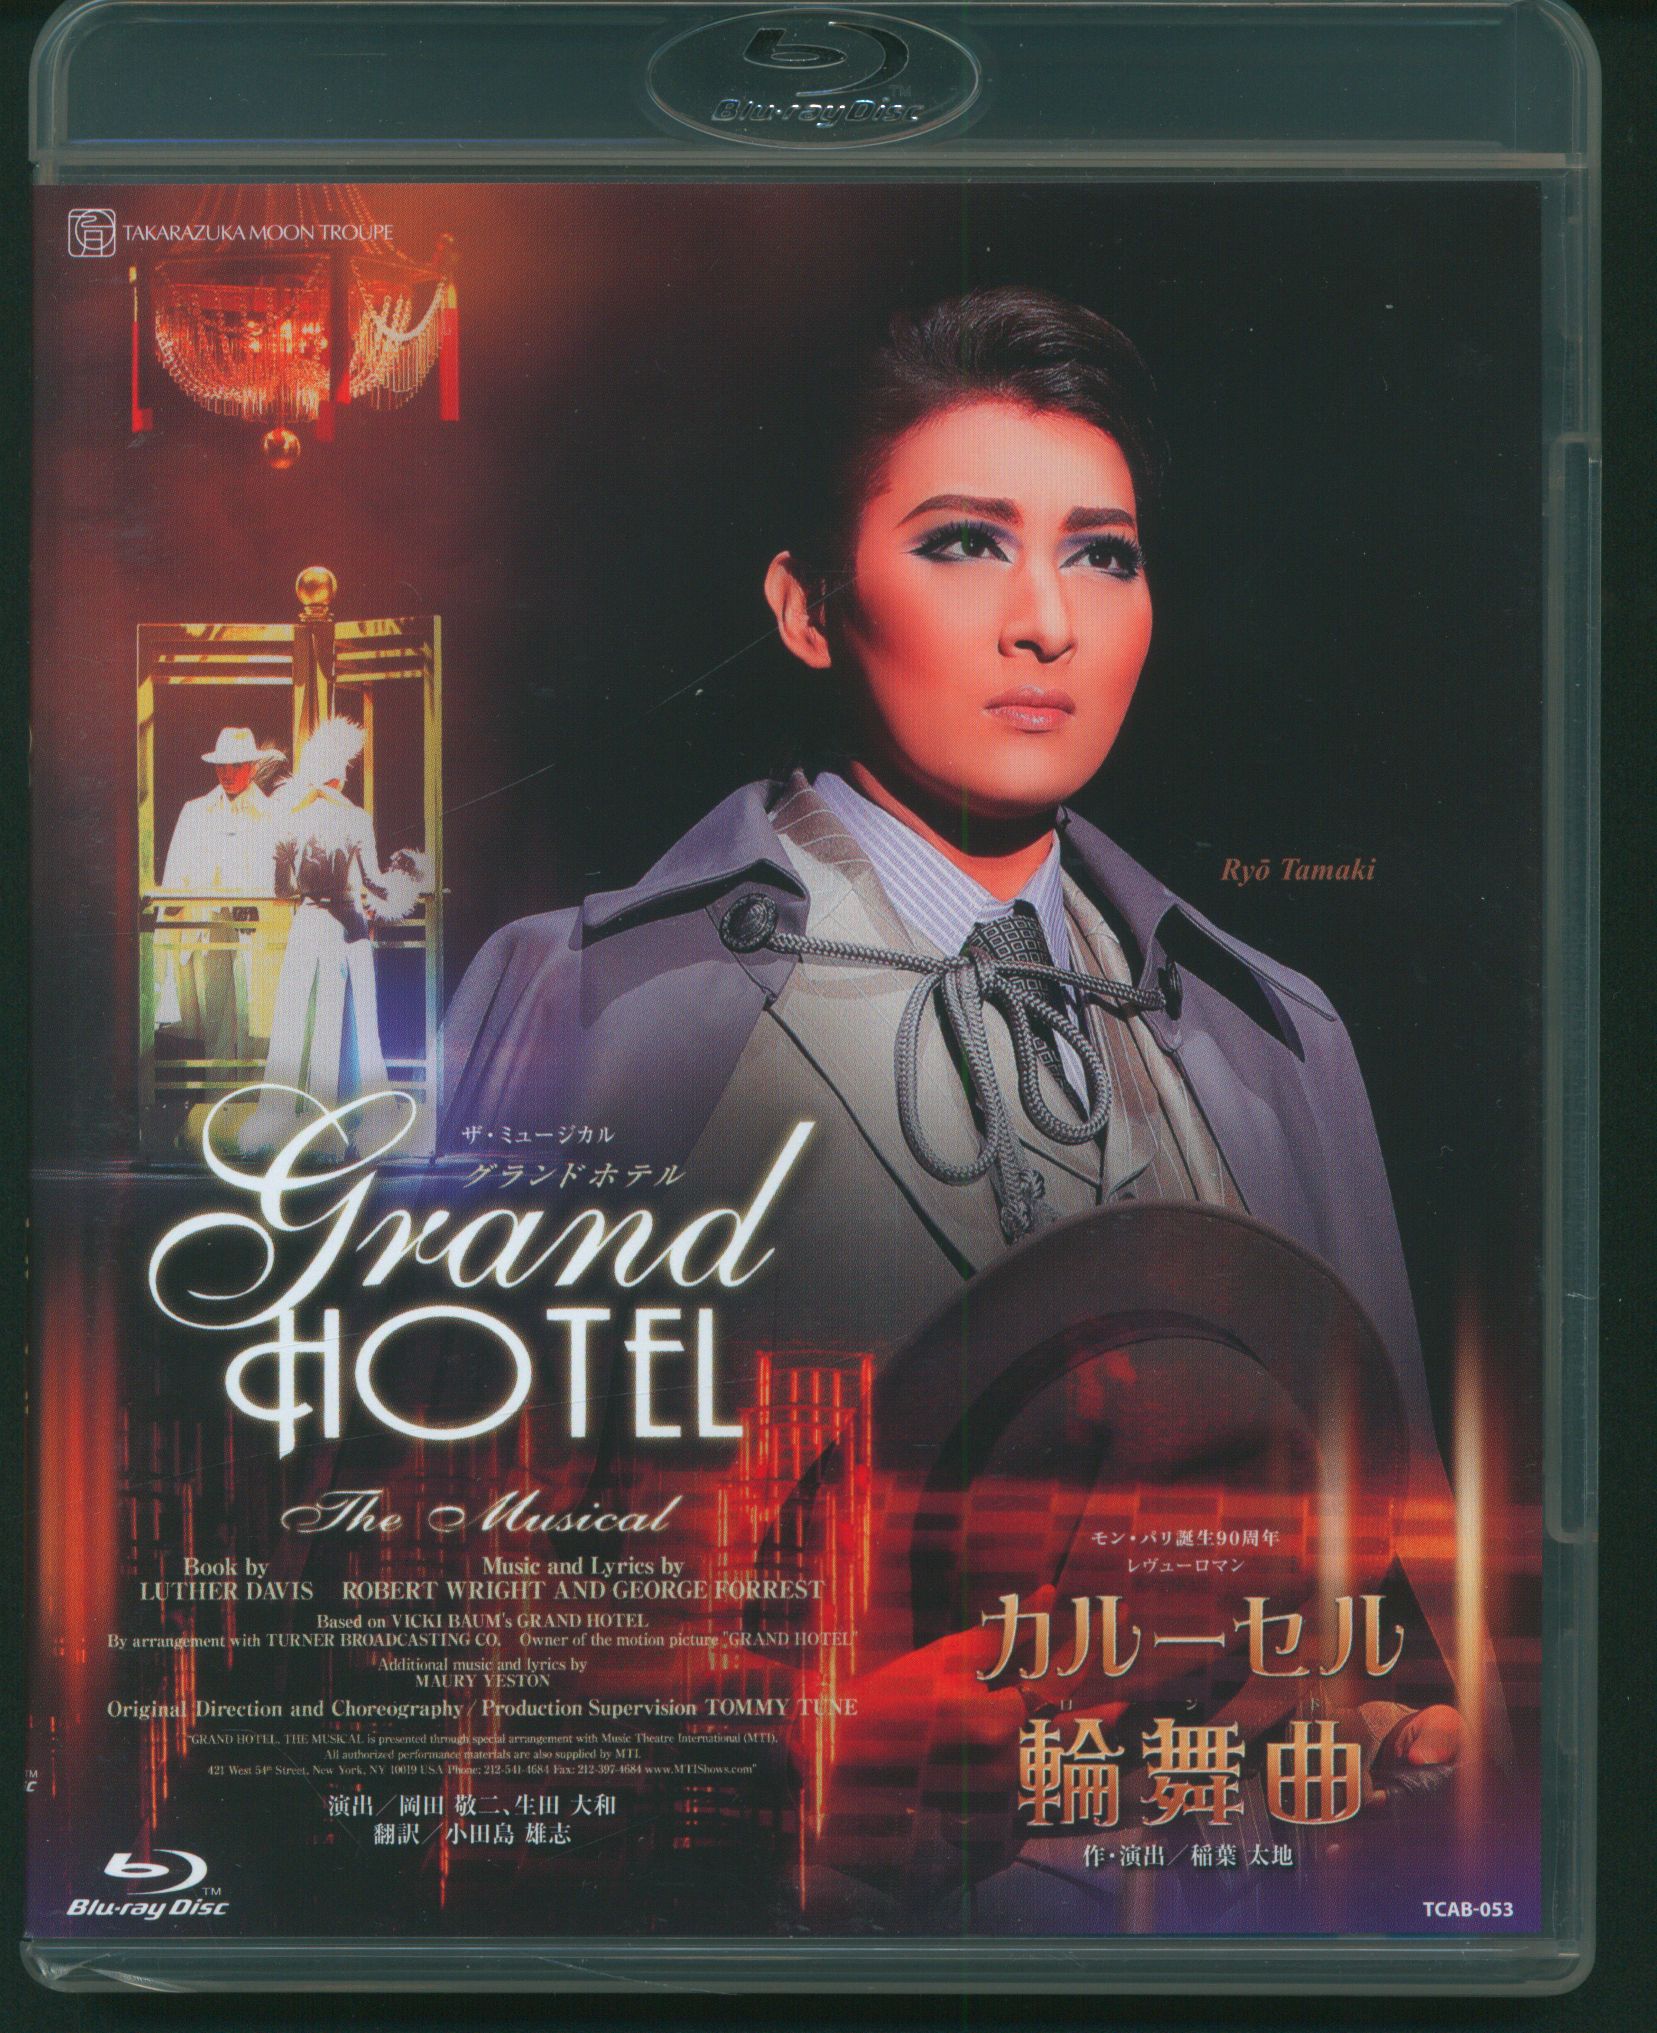 宝塚歌劇団 月組 グランドホテル カルーセル輪舞曲 DVD珠城りょう 愛希 